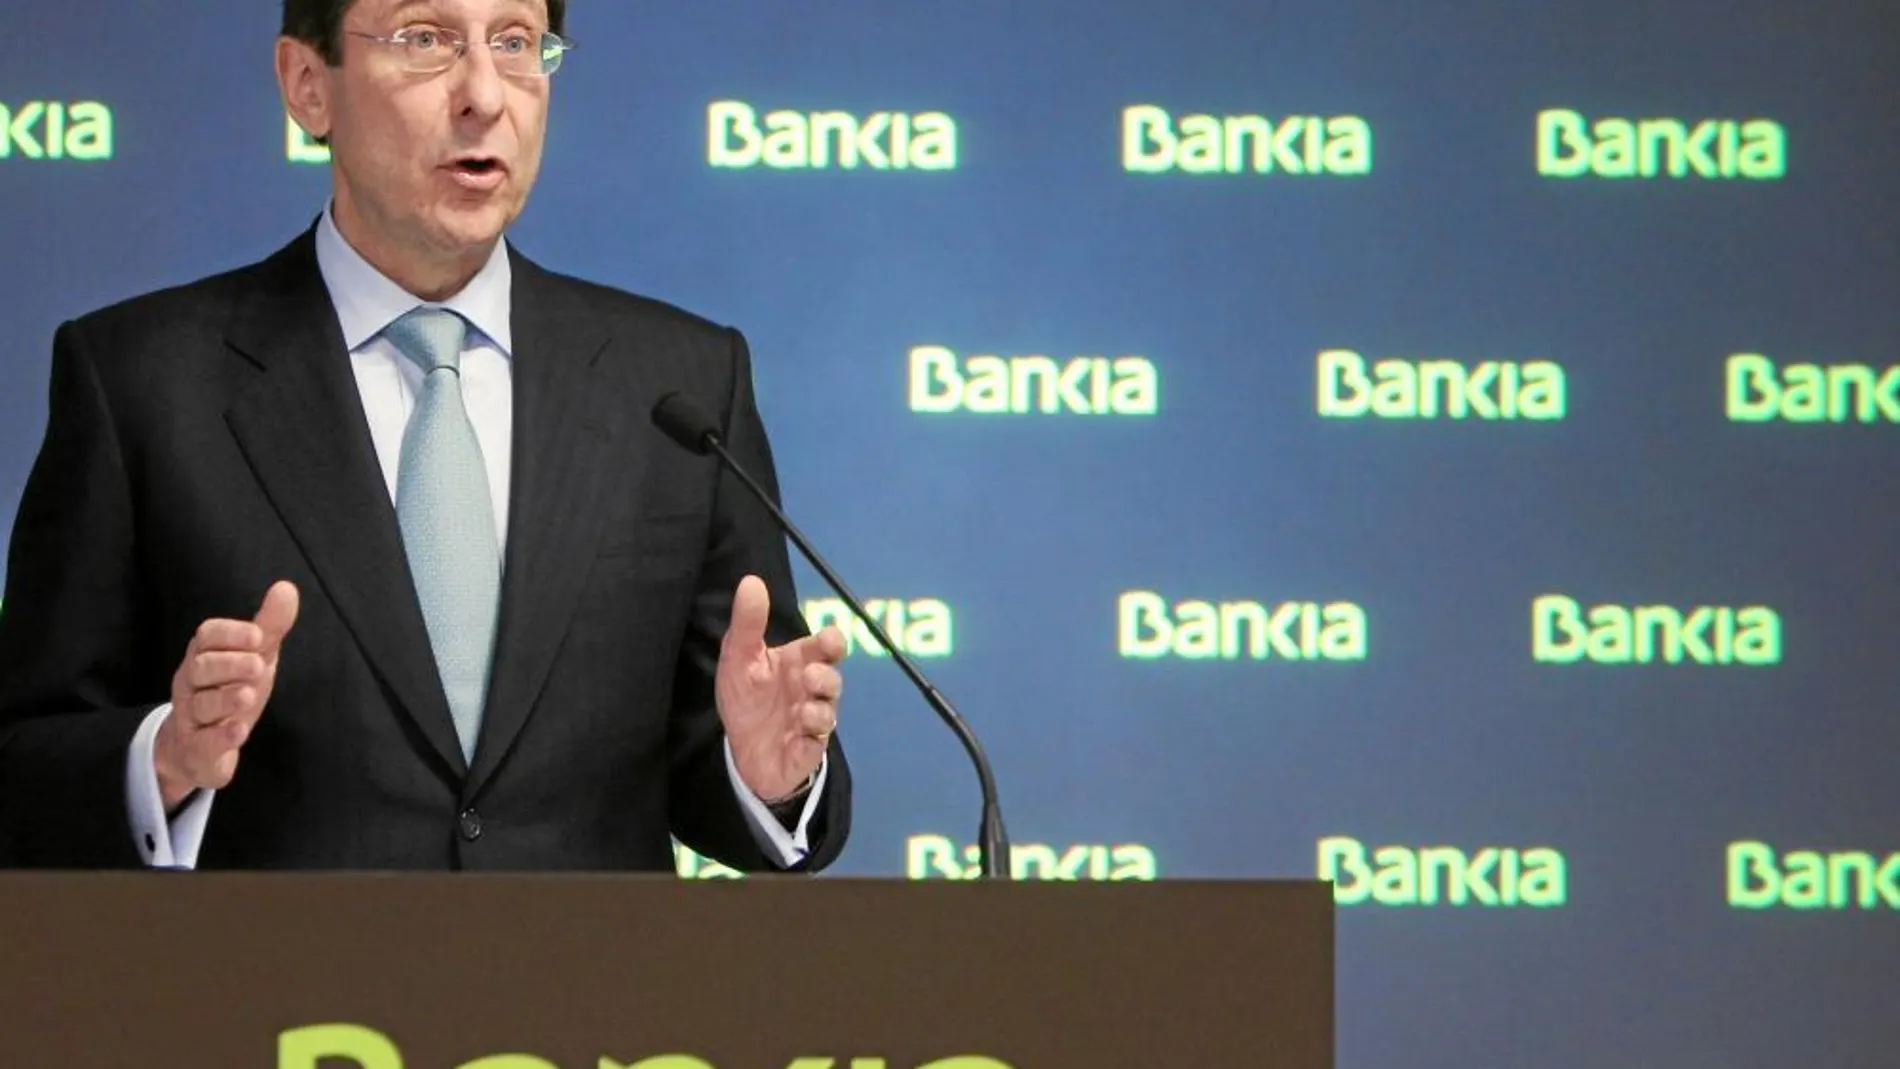 José Ignacio Gorigolzarri llegó a Bankia en mayo de 2012 y ha dado la vuelta a los números de la entidad